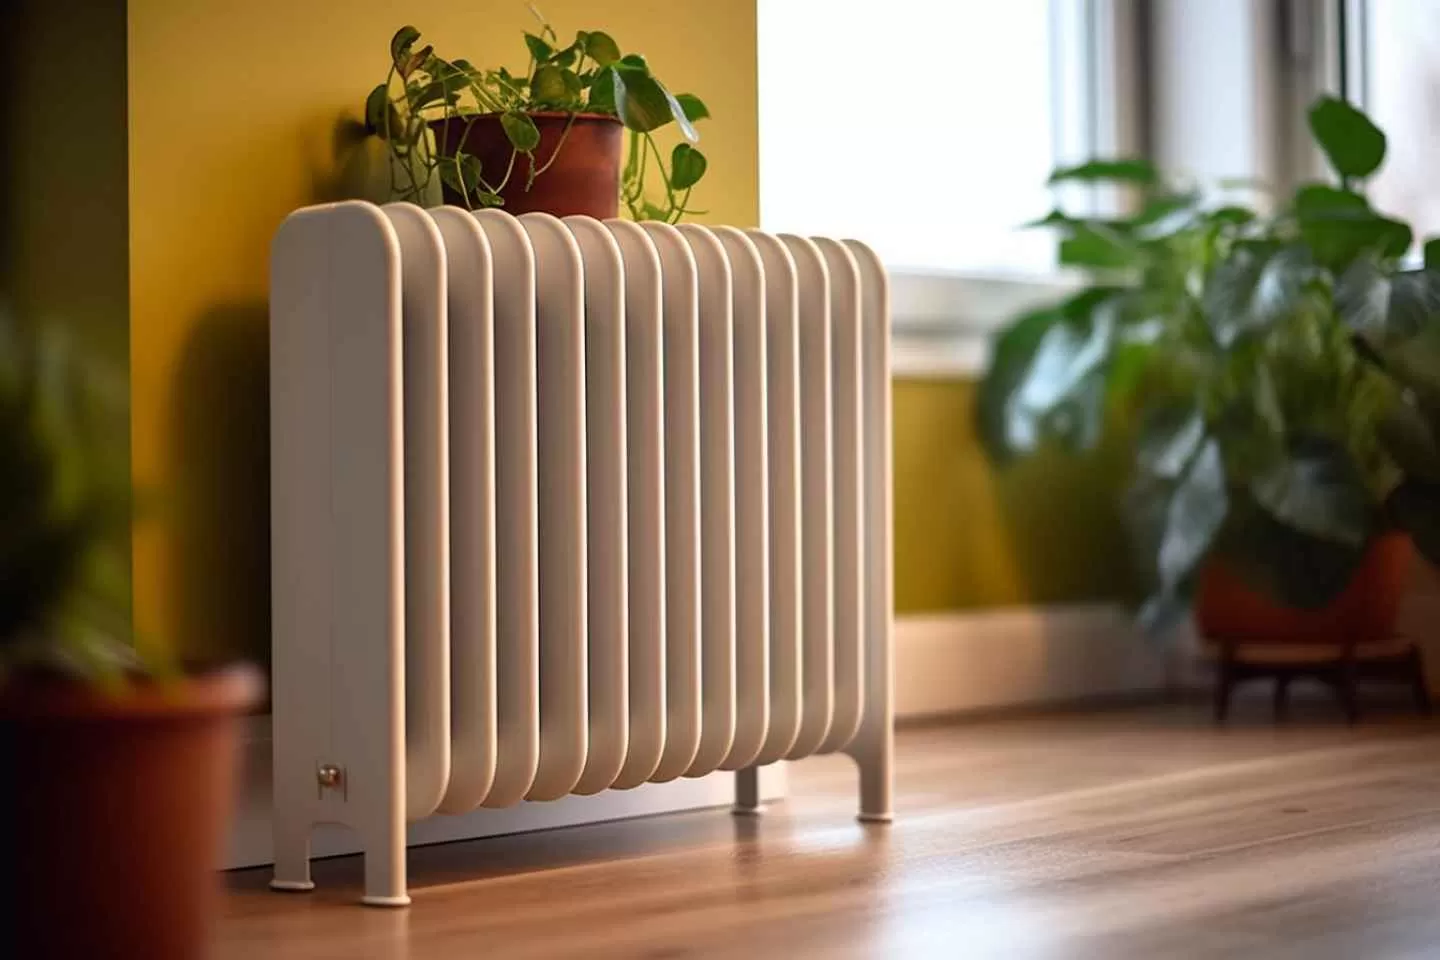 chauffage air air solutions ecologiques pour un confort thermique optimal.webp